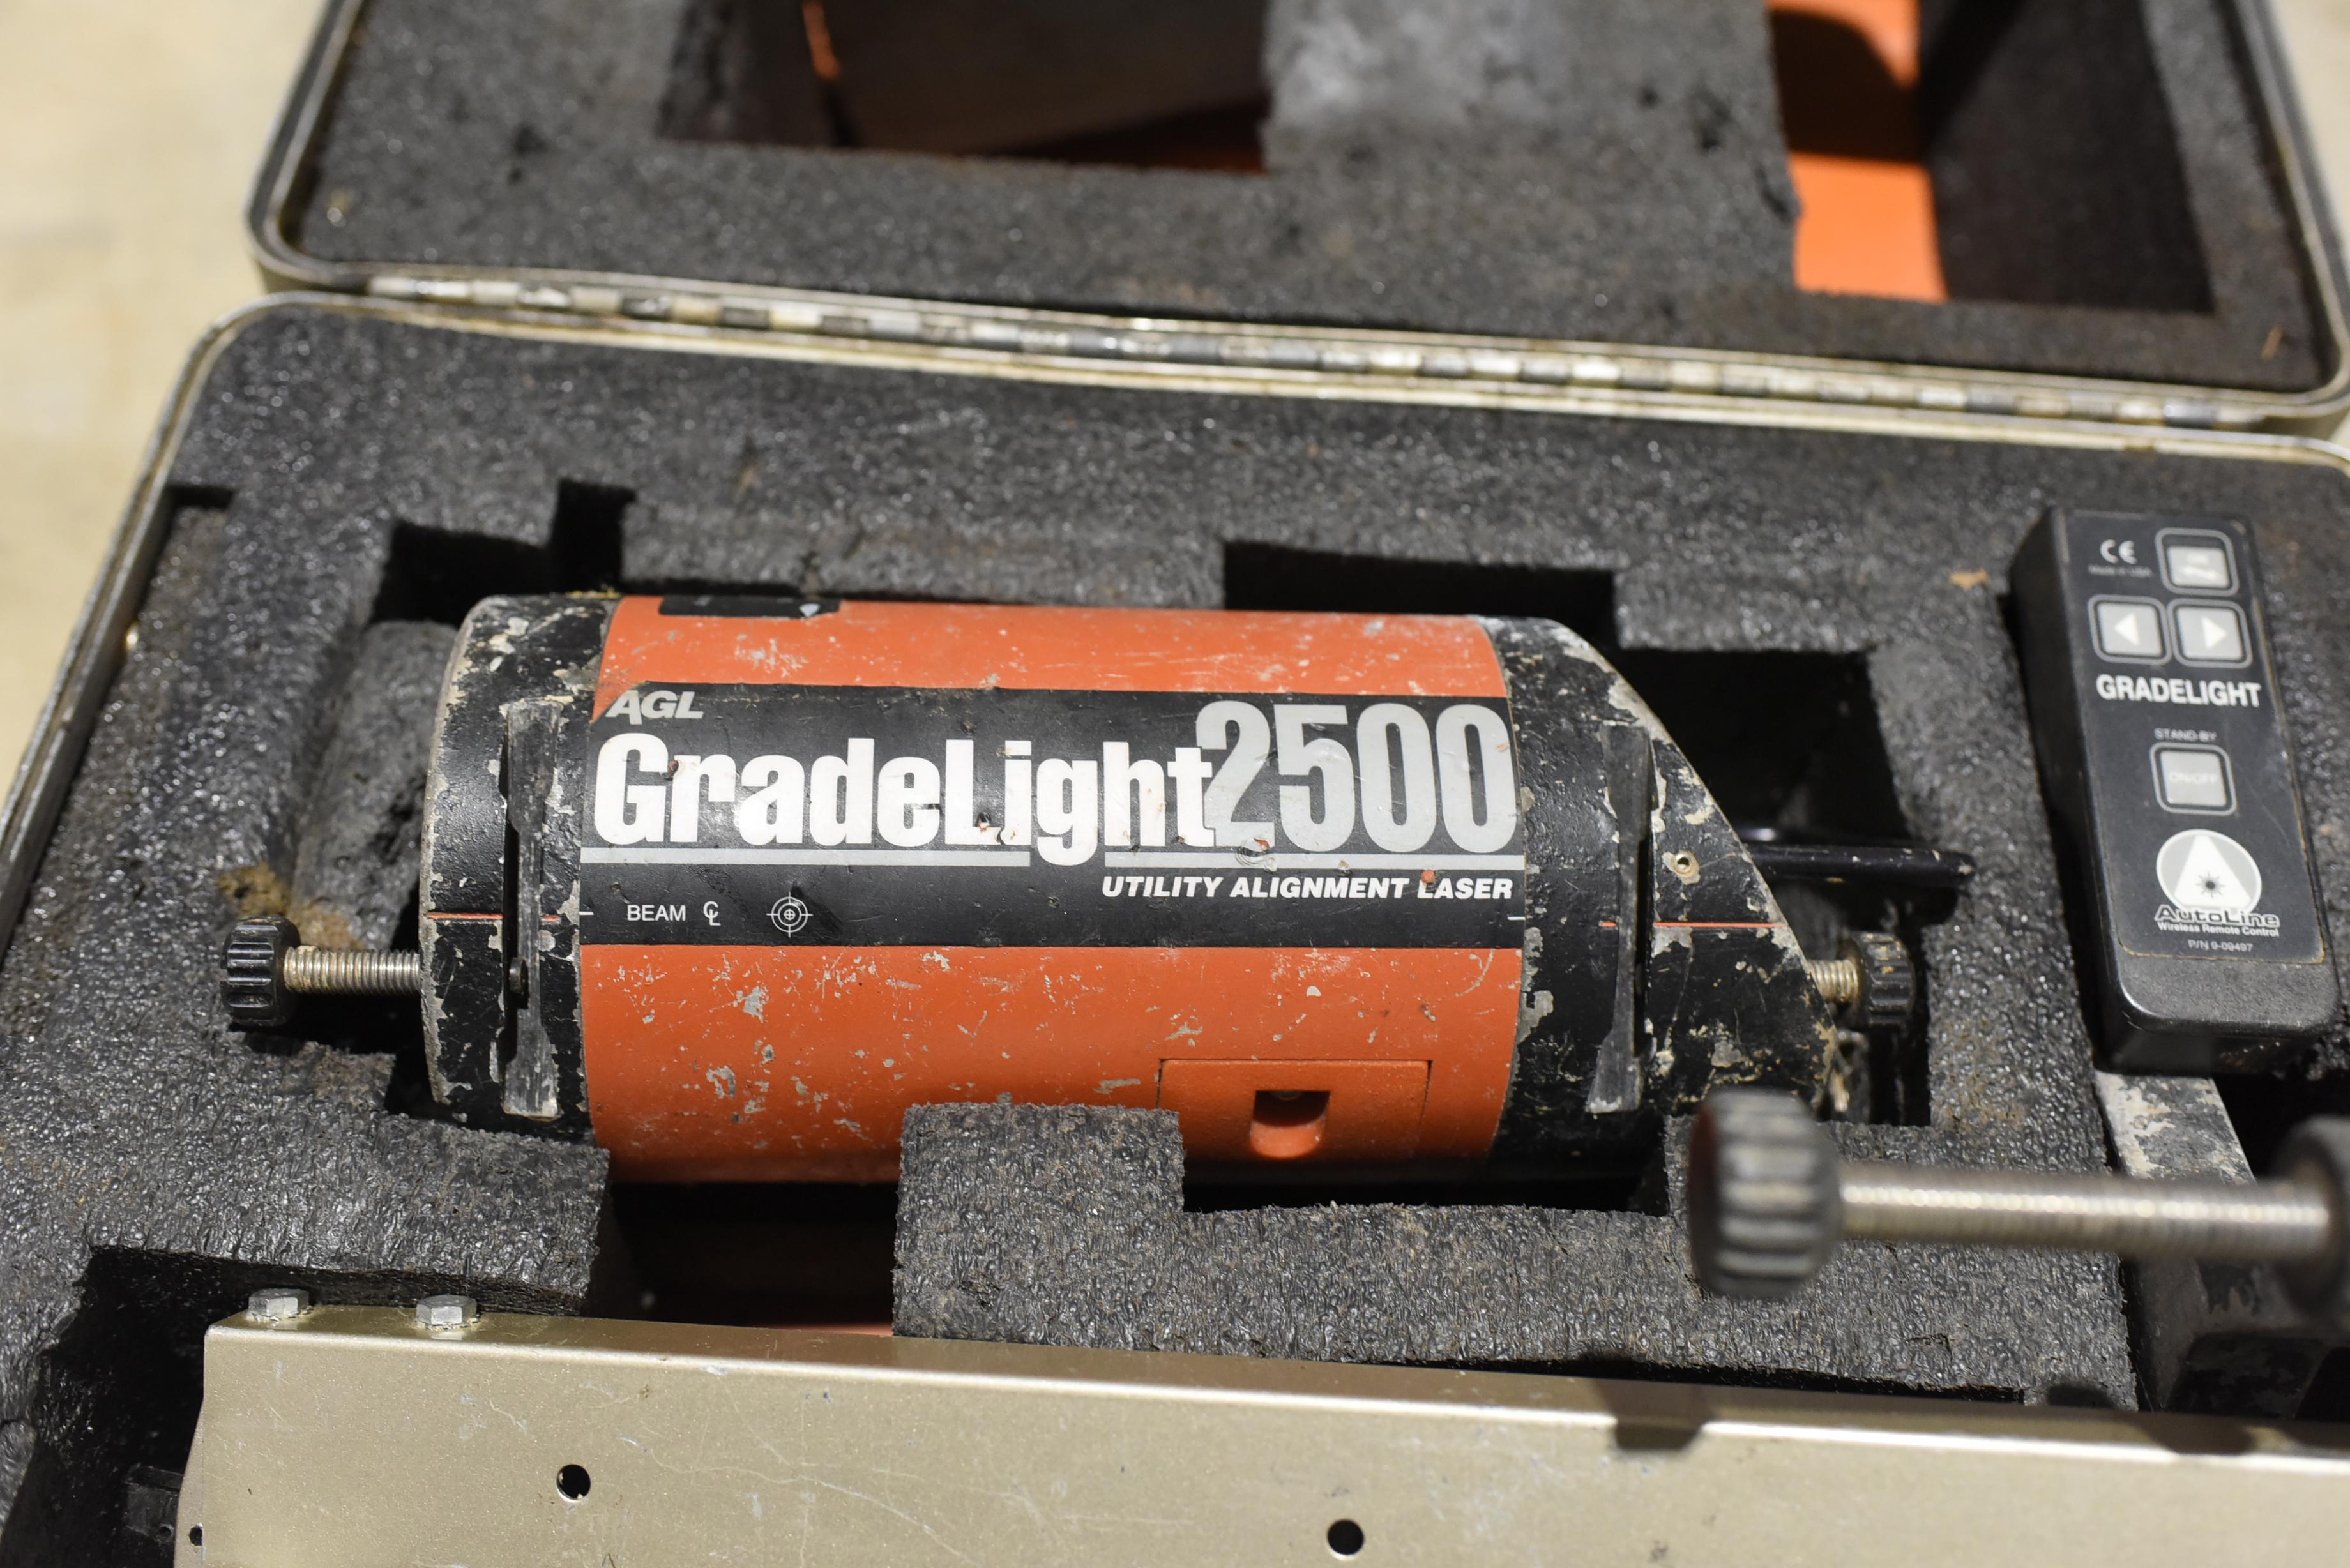 AGL Grade Light 2500 Utility Alignment Laser